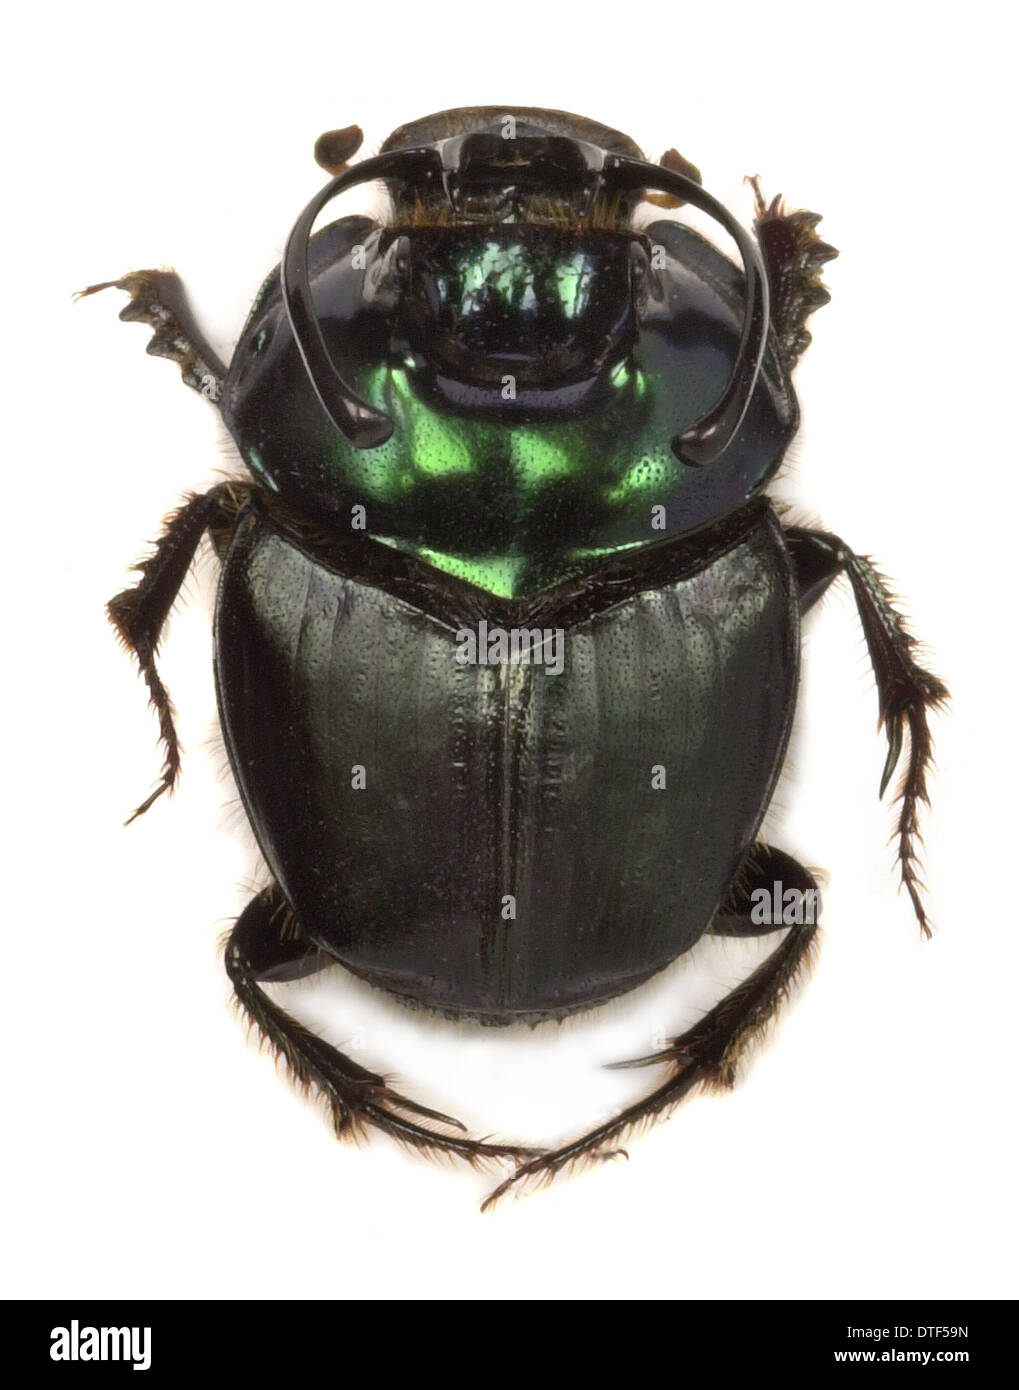 Copris fallaciosus, Kenyan dung beetle Stock Photo